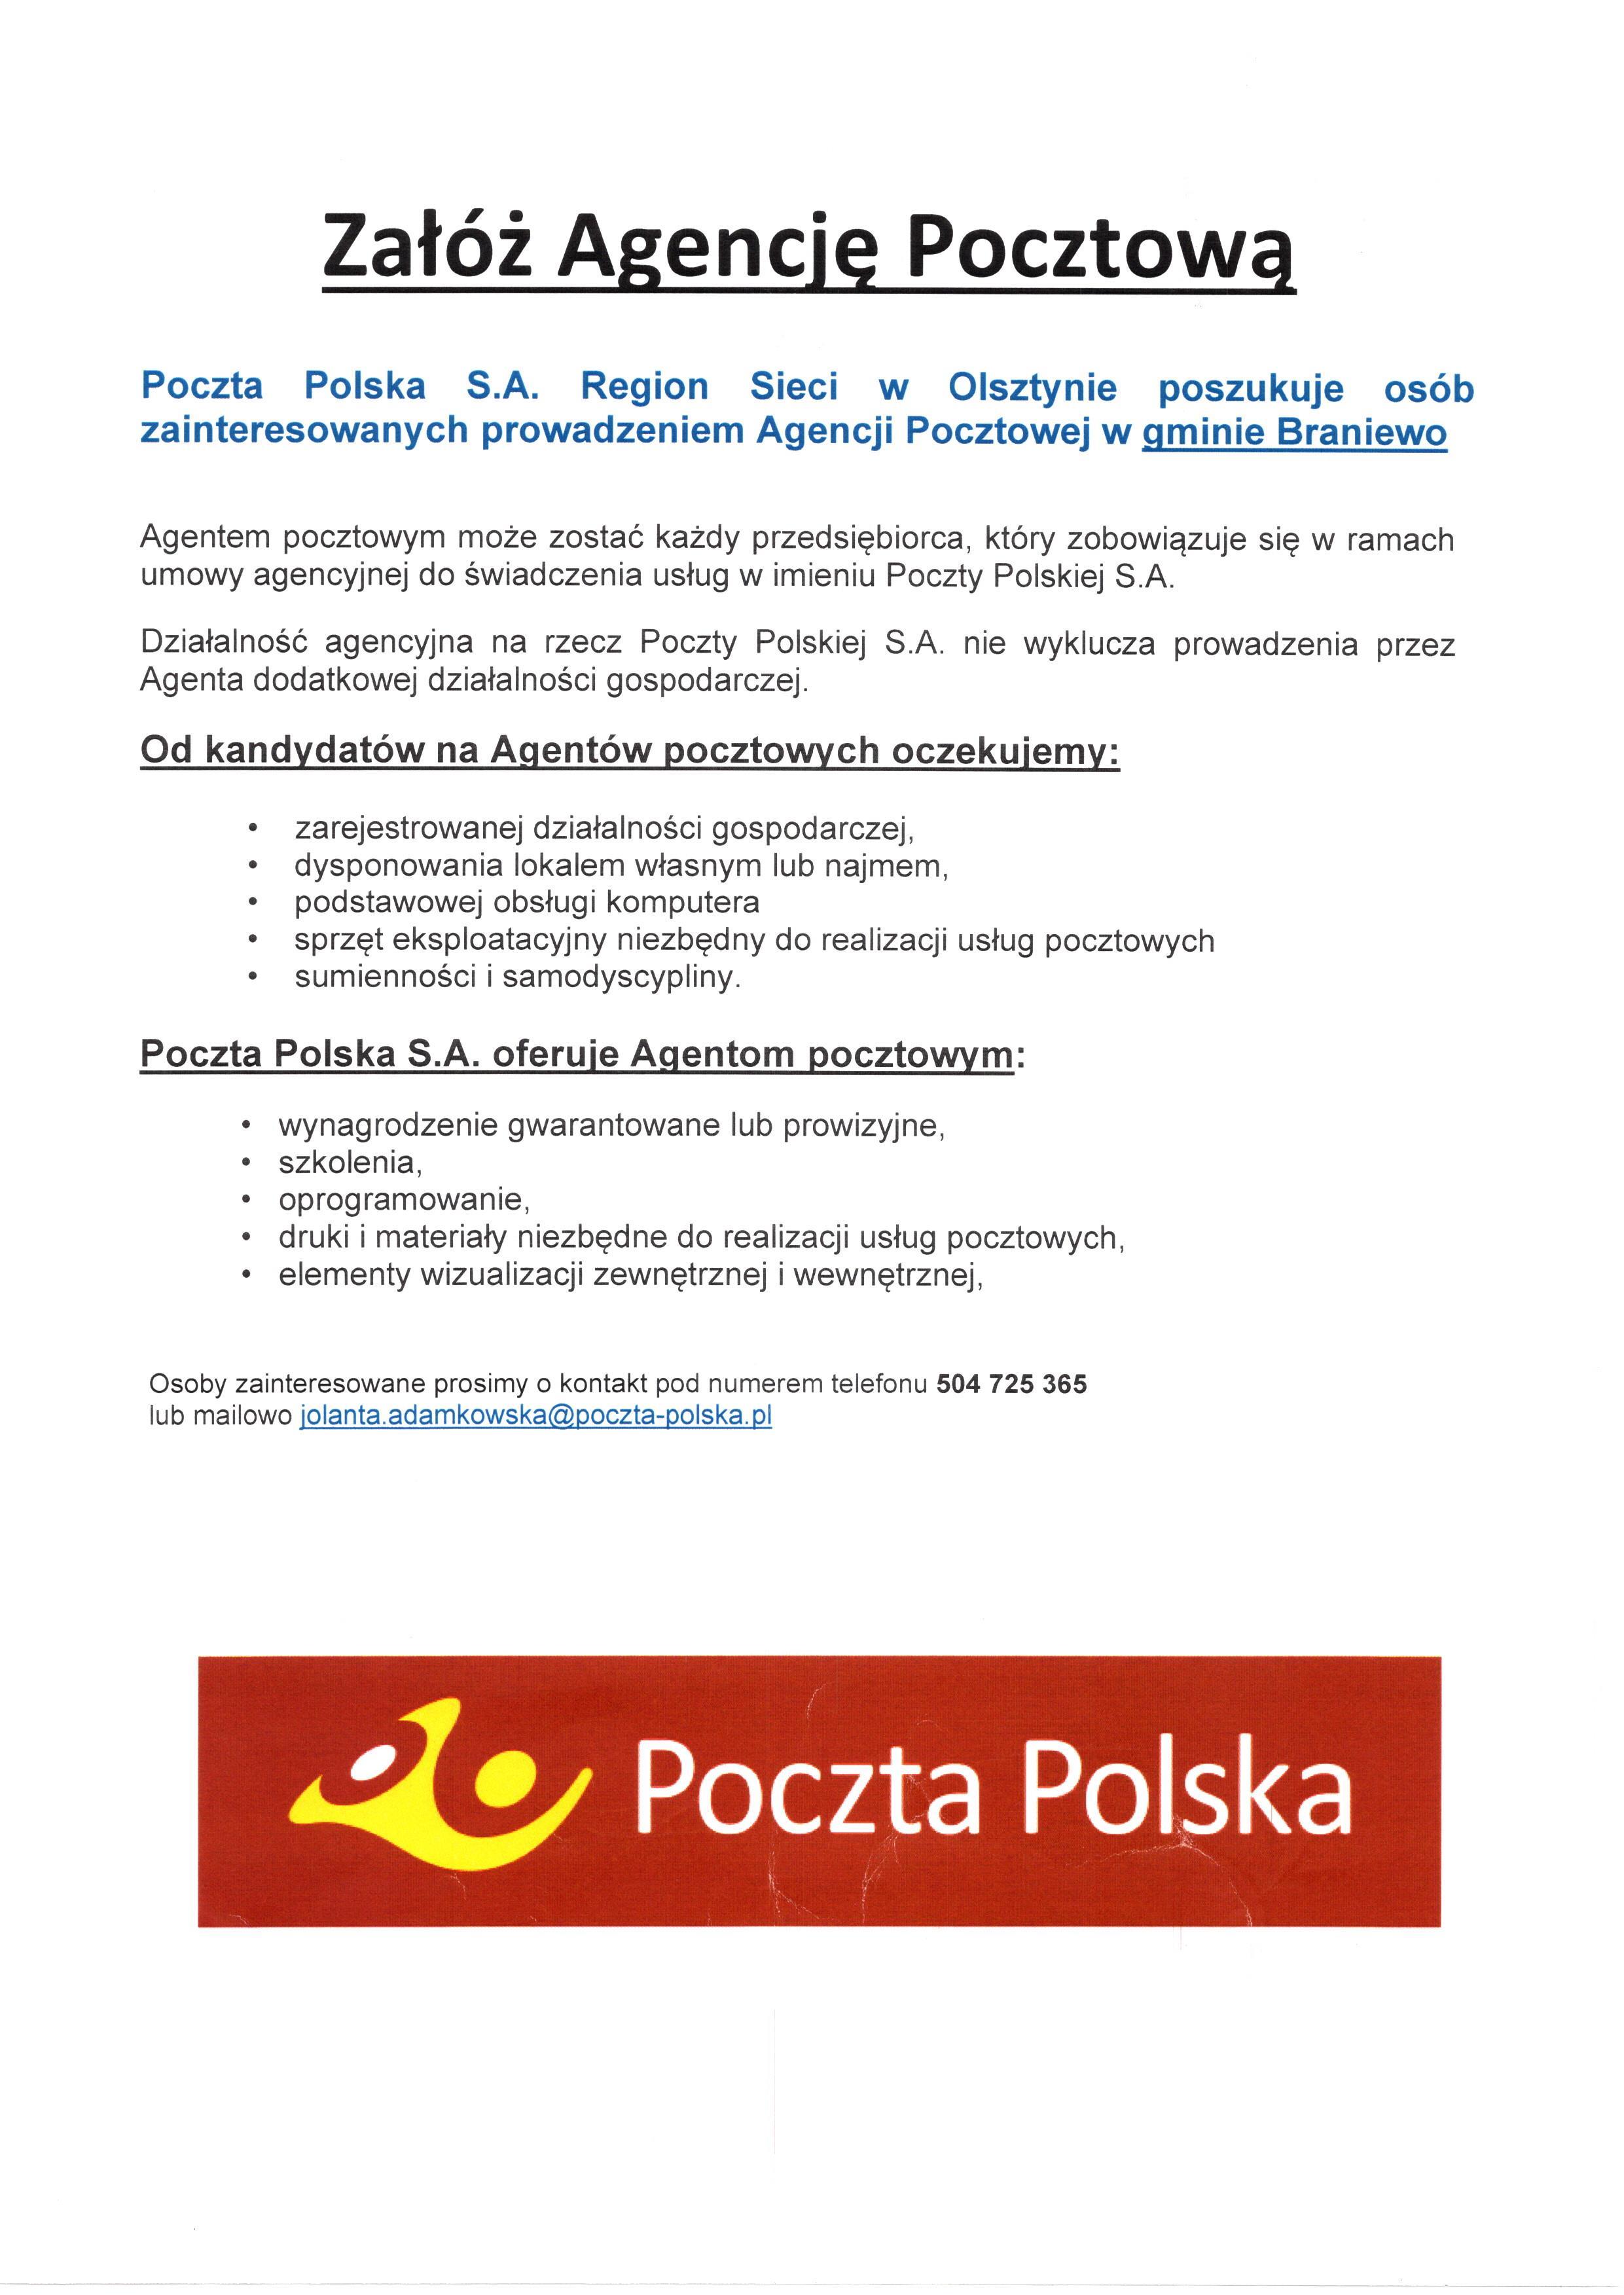 Poczta Polska poszukuje osób zainteresowanych prowadzeniem Agencji pocztowej na terenie Gminy Braniewo